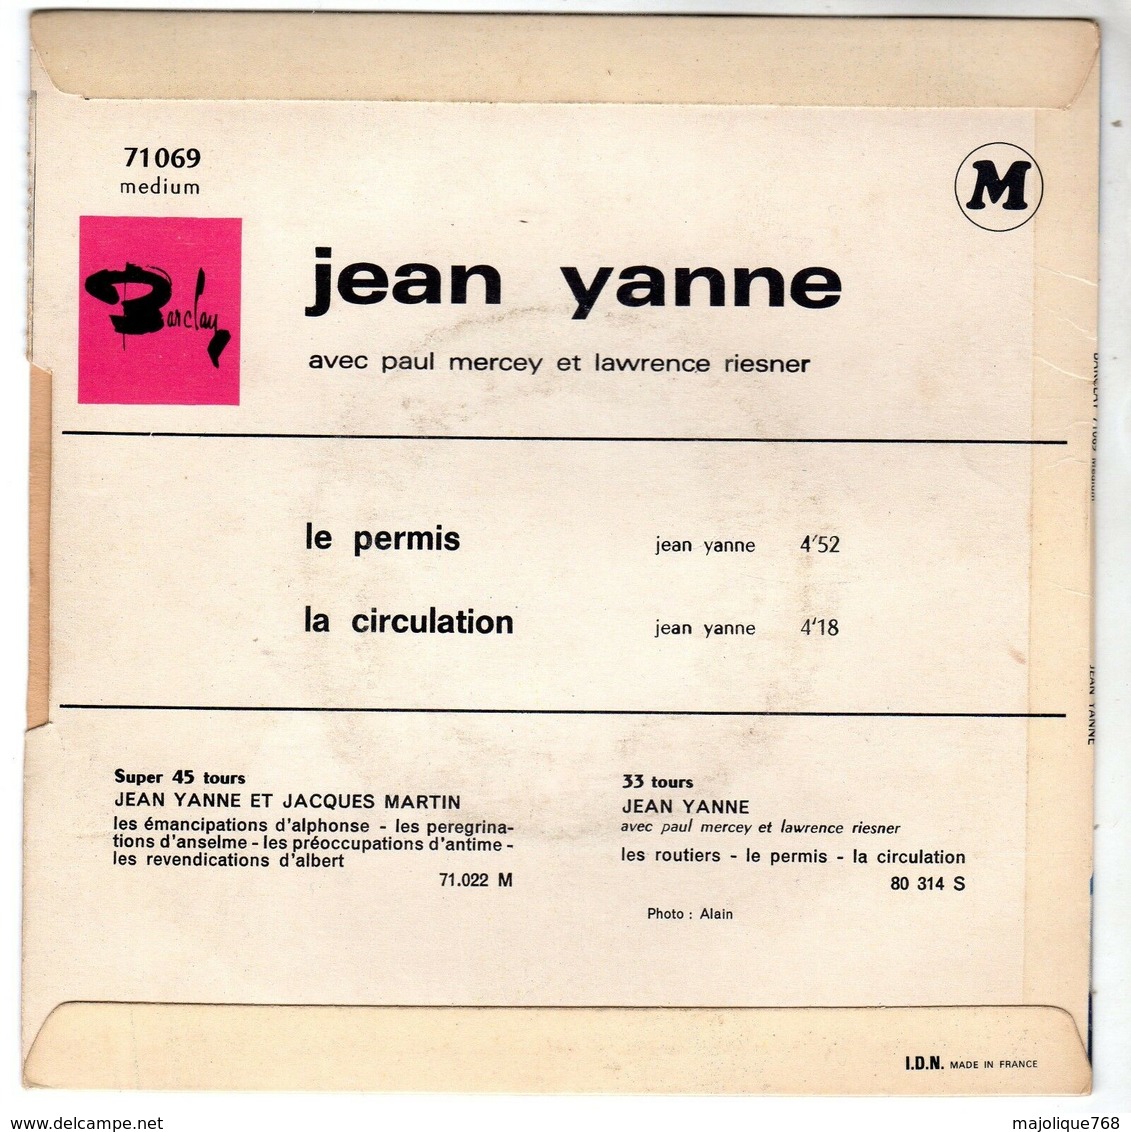 Disque De Jean Yanne - Le Permis - Barclay 71069 M - 1967 - - Humor, Cabaret